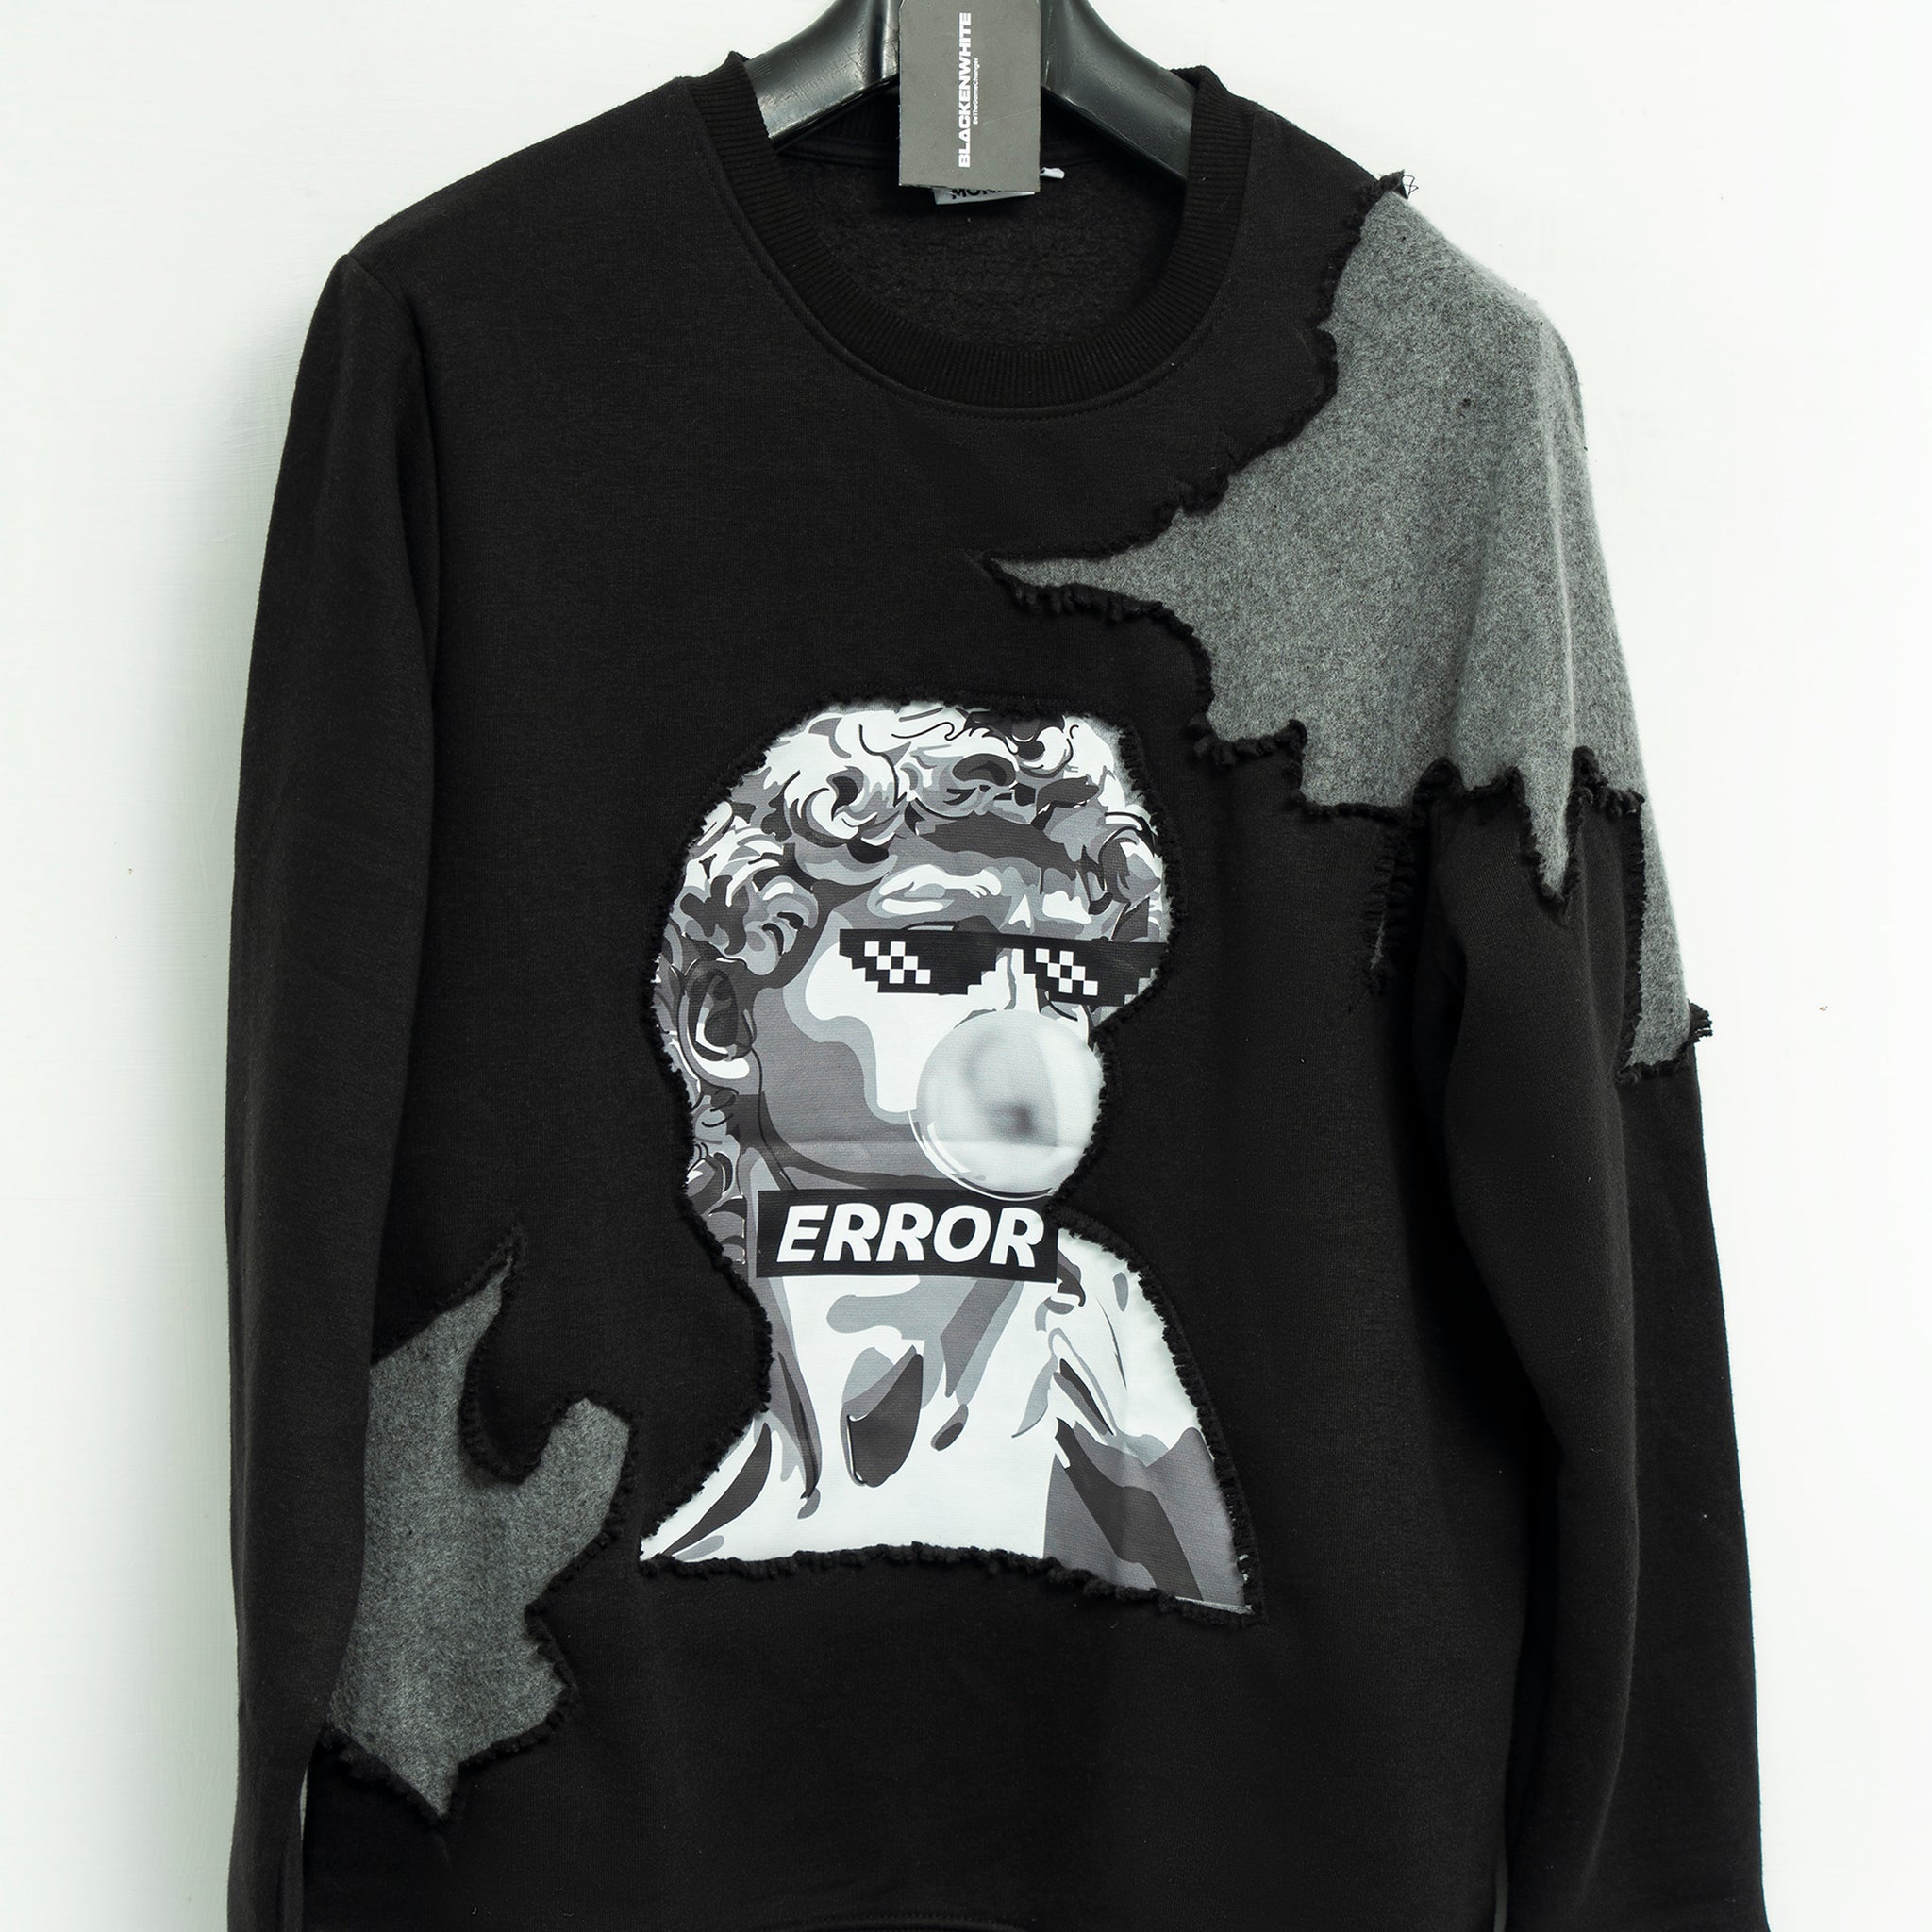 "Chill in Error" Patchwork Sweatshirt